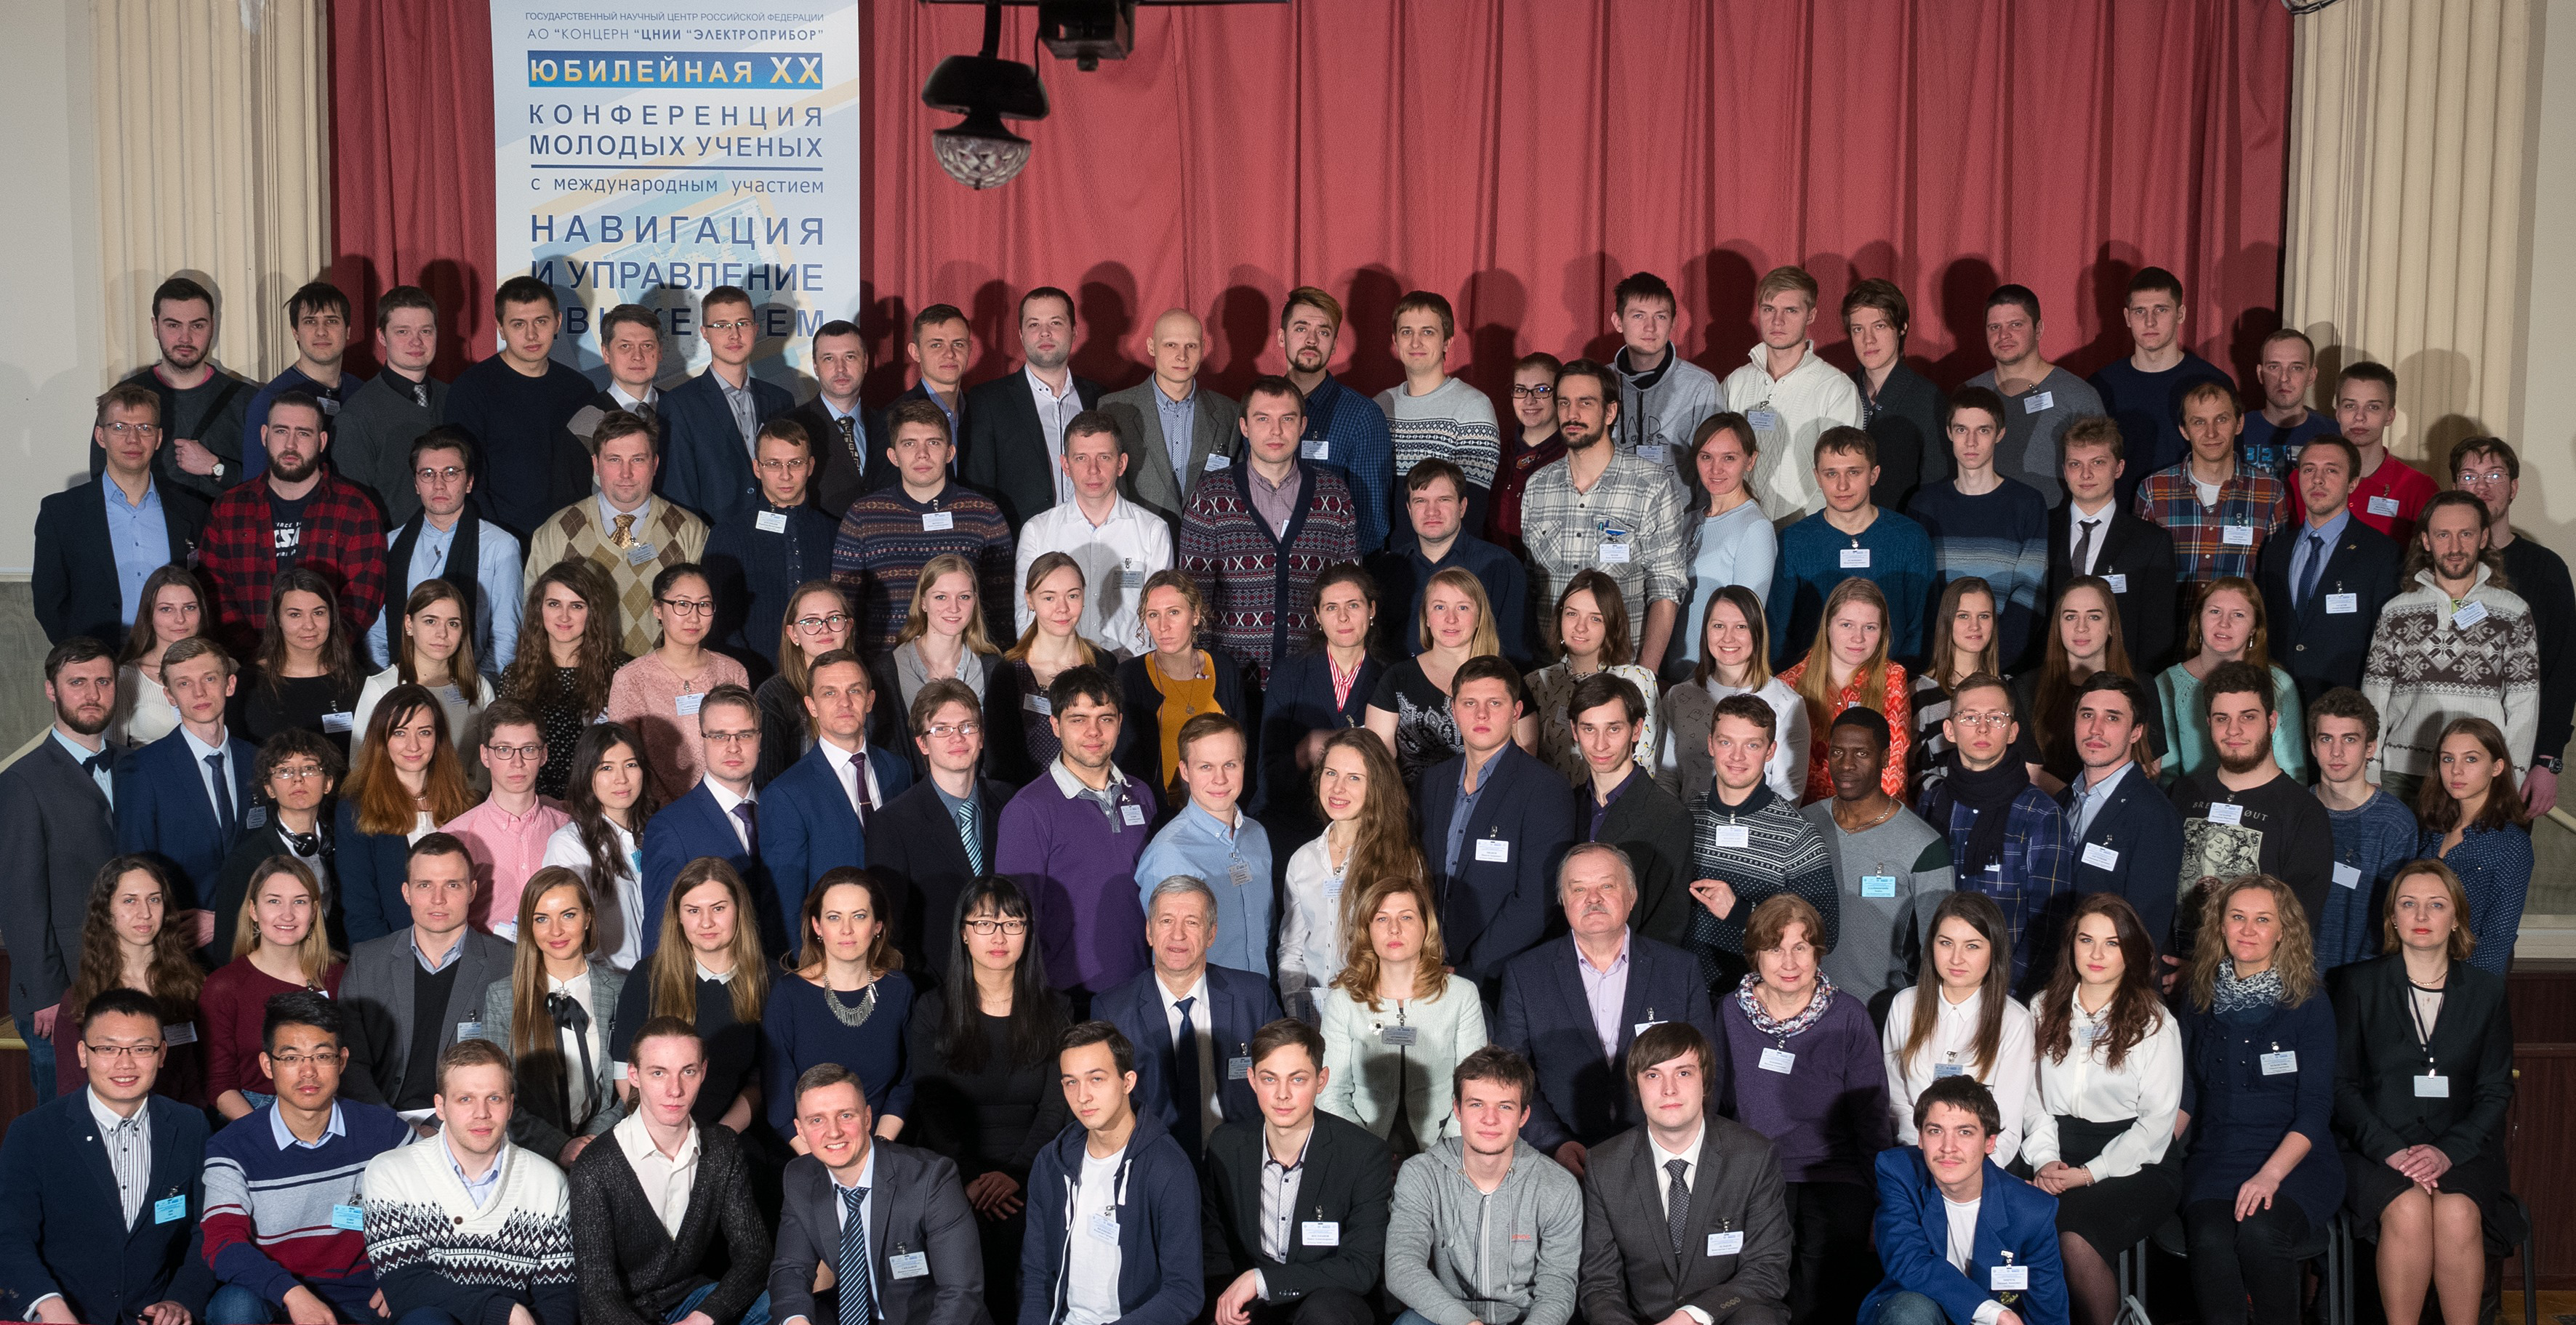 Юбилейная XX конференция молодых ученых 